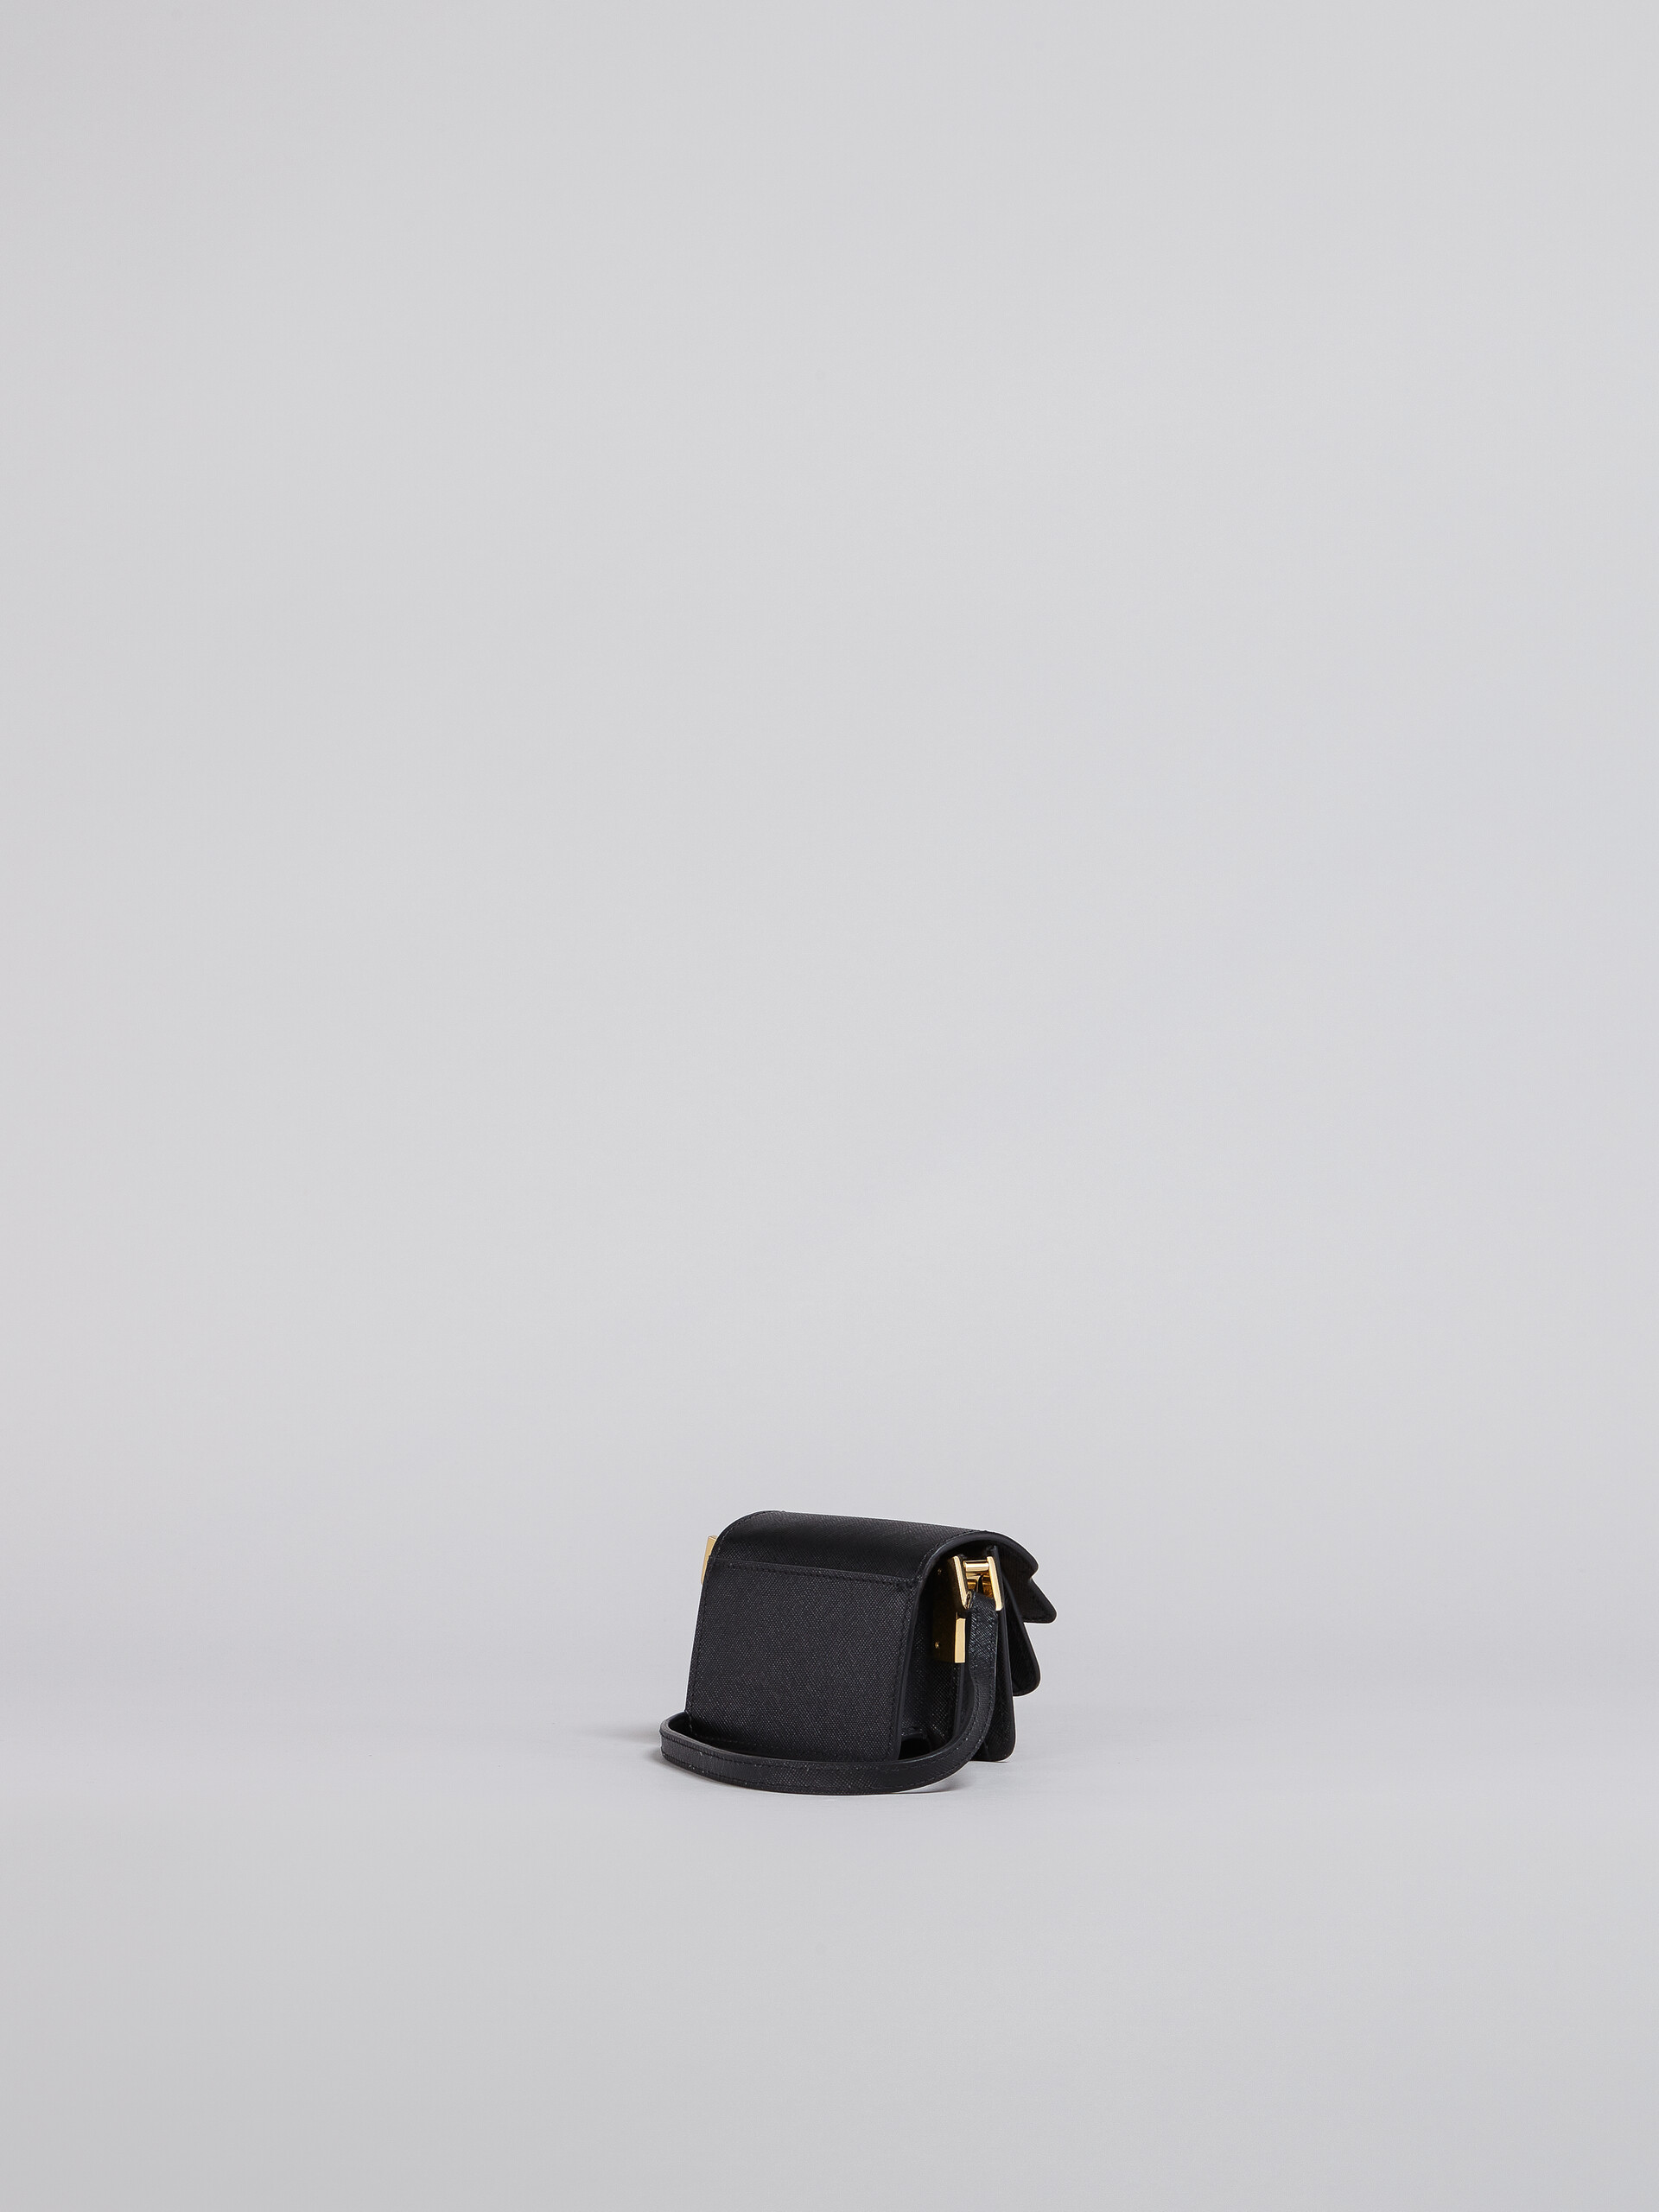 TRUNK bag nano in saffiano nero - Borse a spalla - Image 2